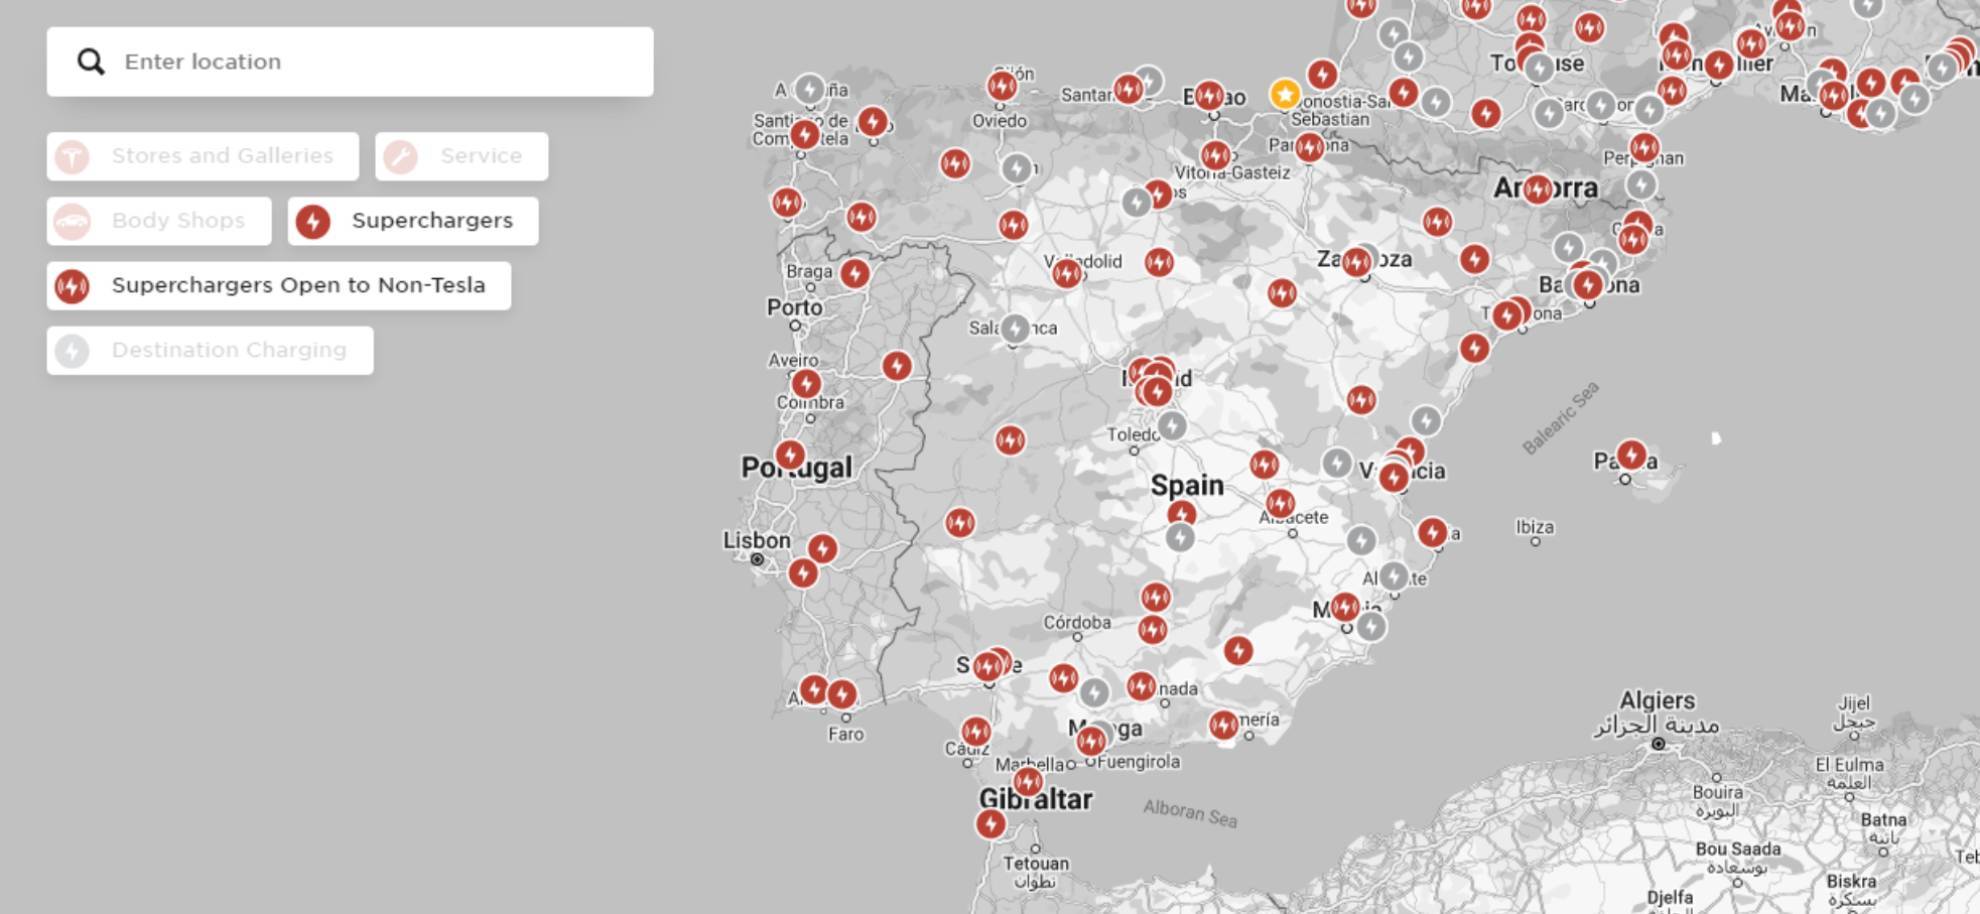 Mapa con la red de supercargadores de Tesla en Espaa.